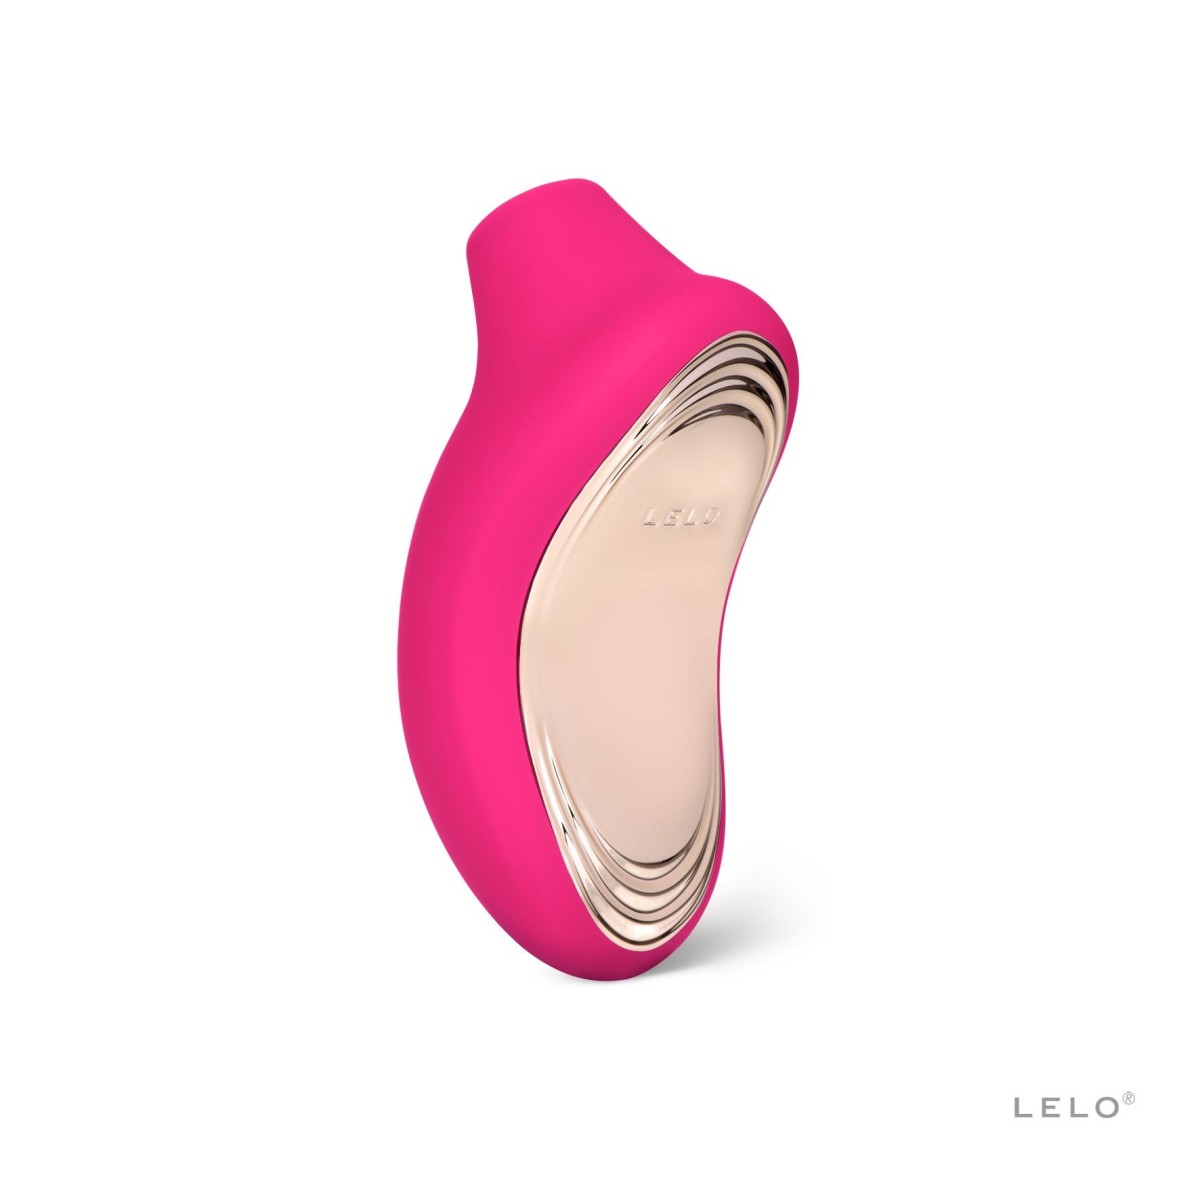 Stimulátor klitorisu LELO Sona 2 Cruise Cerise, luxusní sonický stimulátor klitorisu